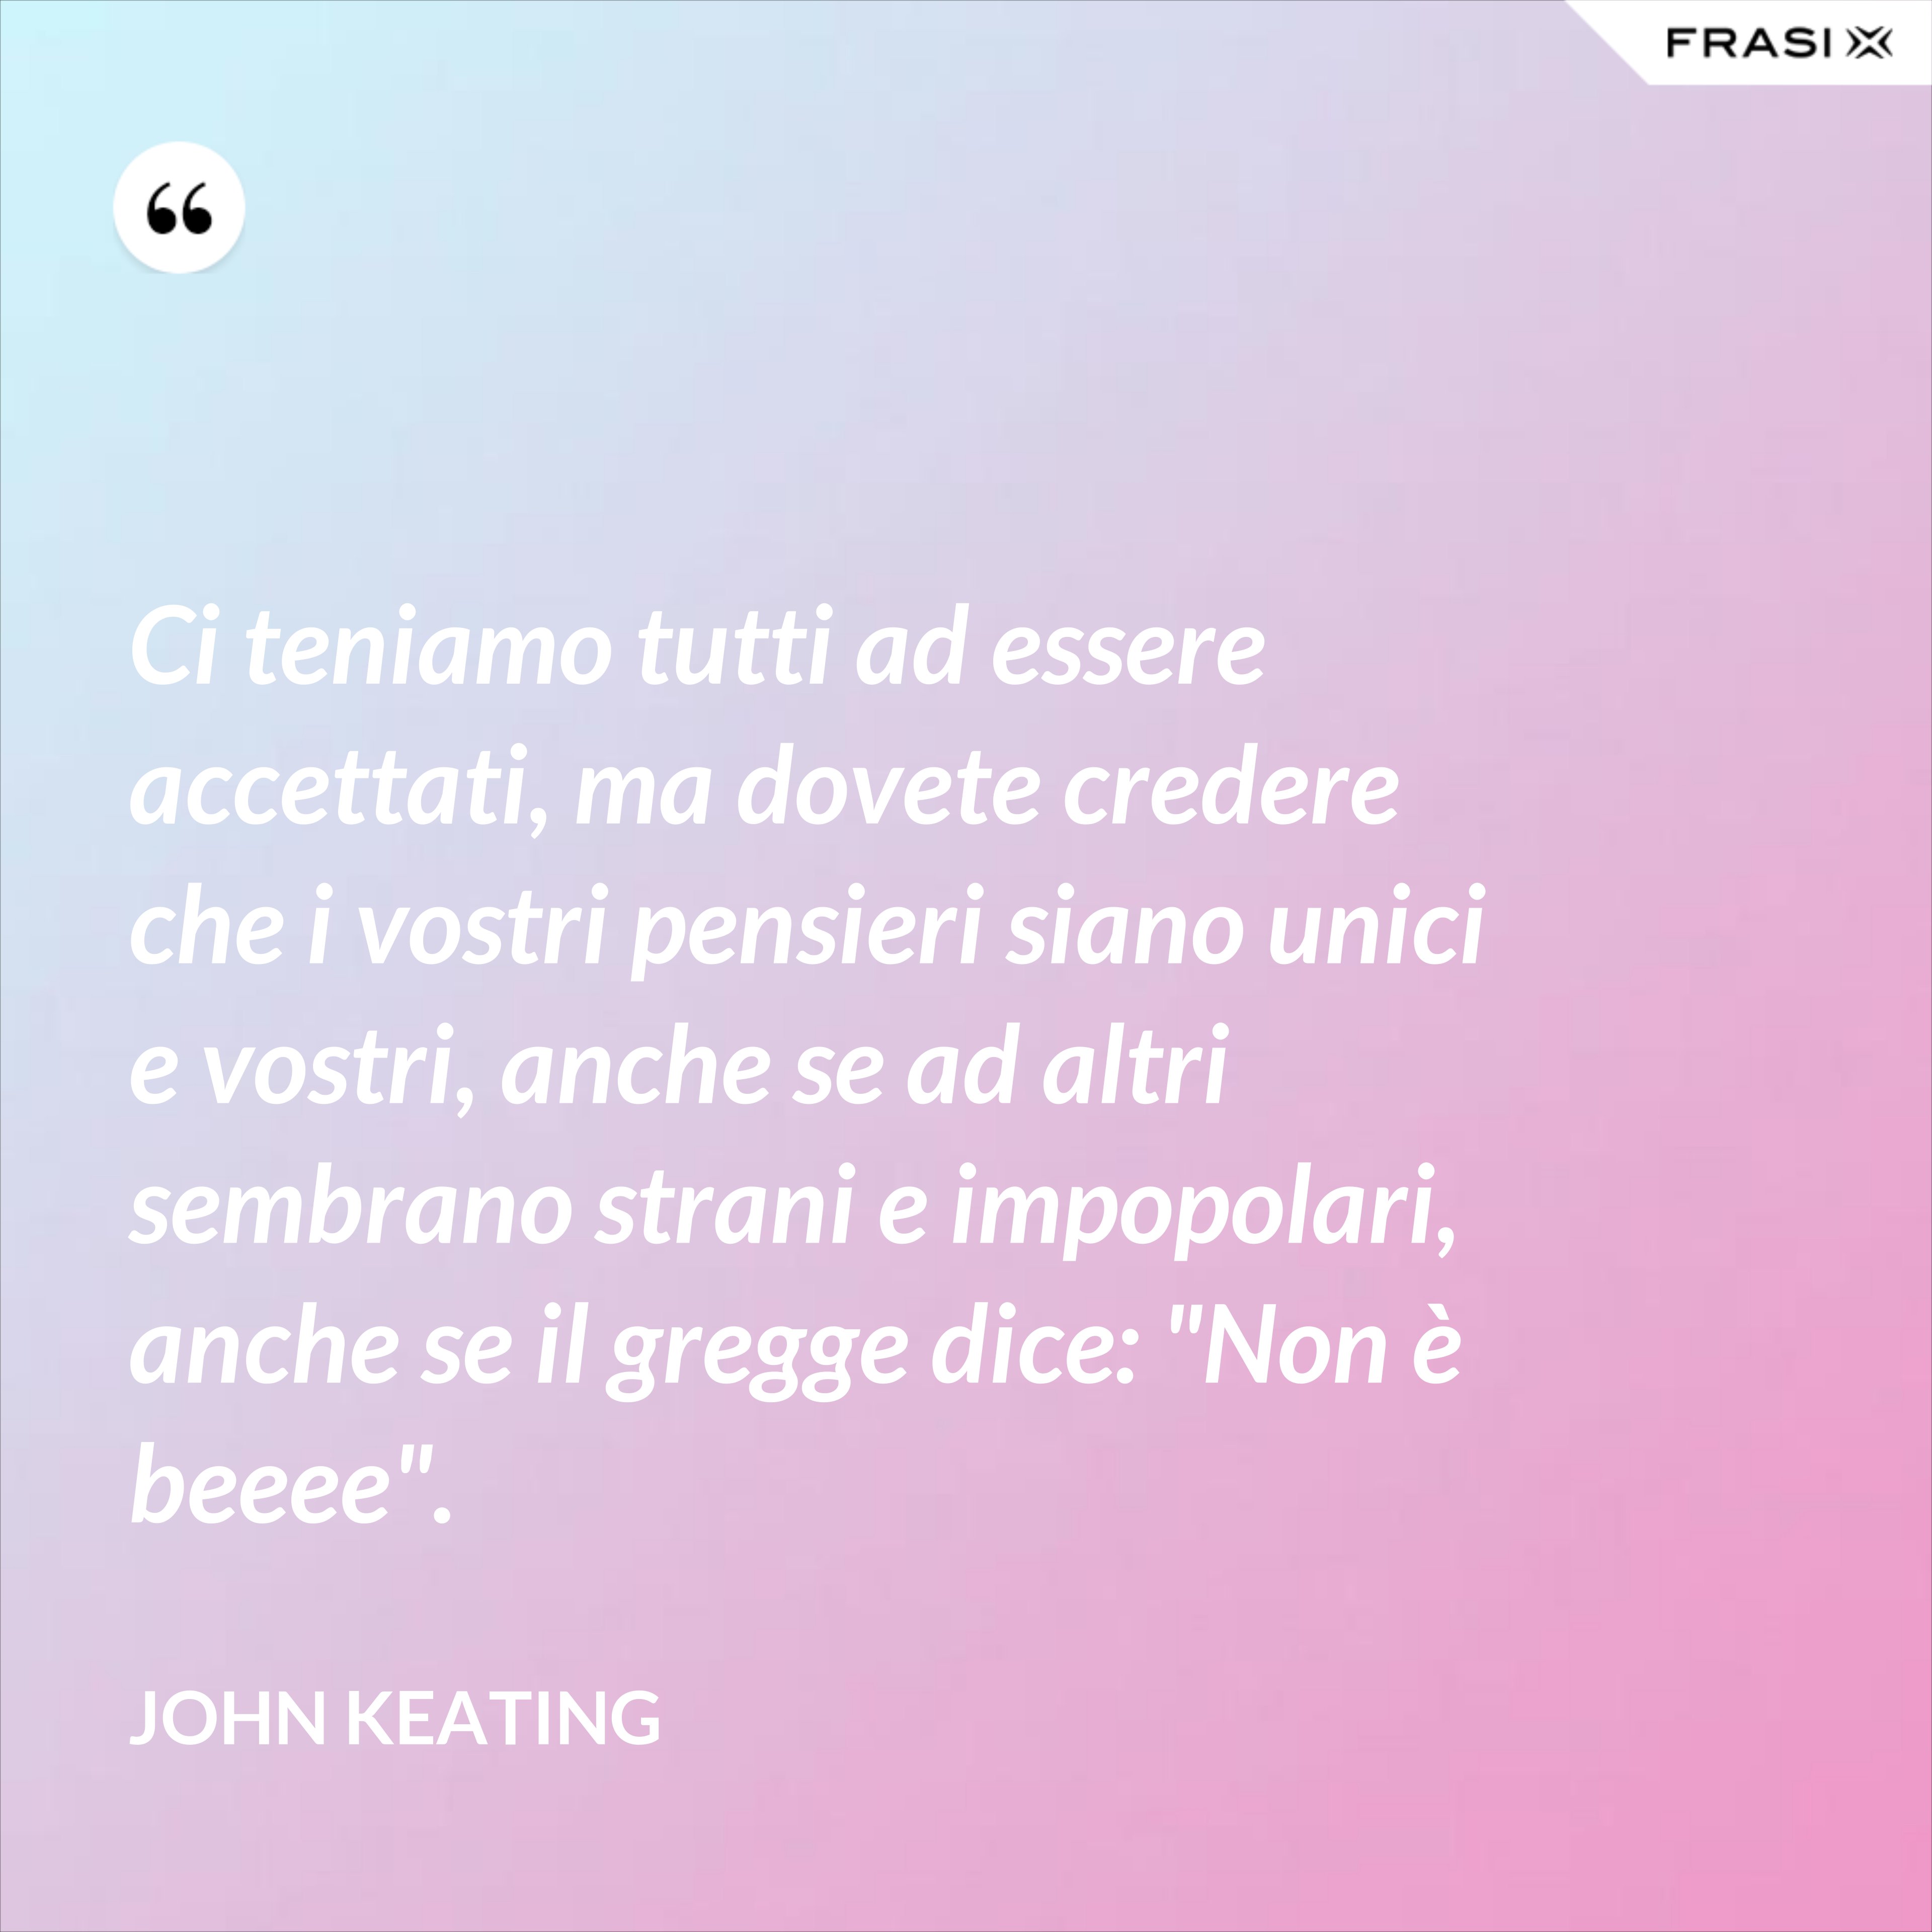 Ci teniamo tutti ad essere accettati, ma dovete credere che i vostri pensieri siano unici e vostri, anche se ad altri sembrano strani e impopolari, anche se il gregge dice: "Non è beeee". - John Keating